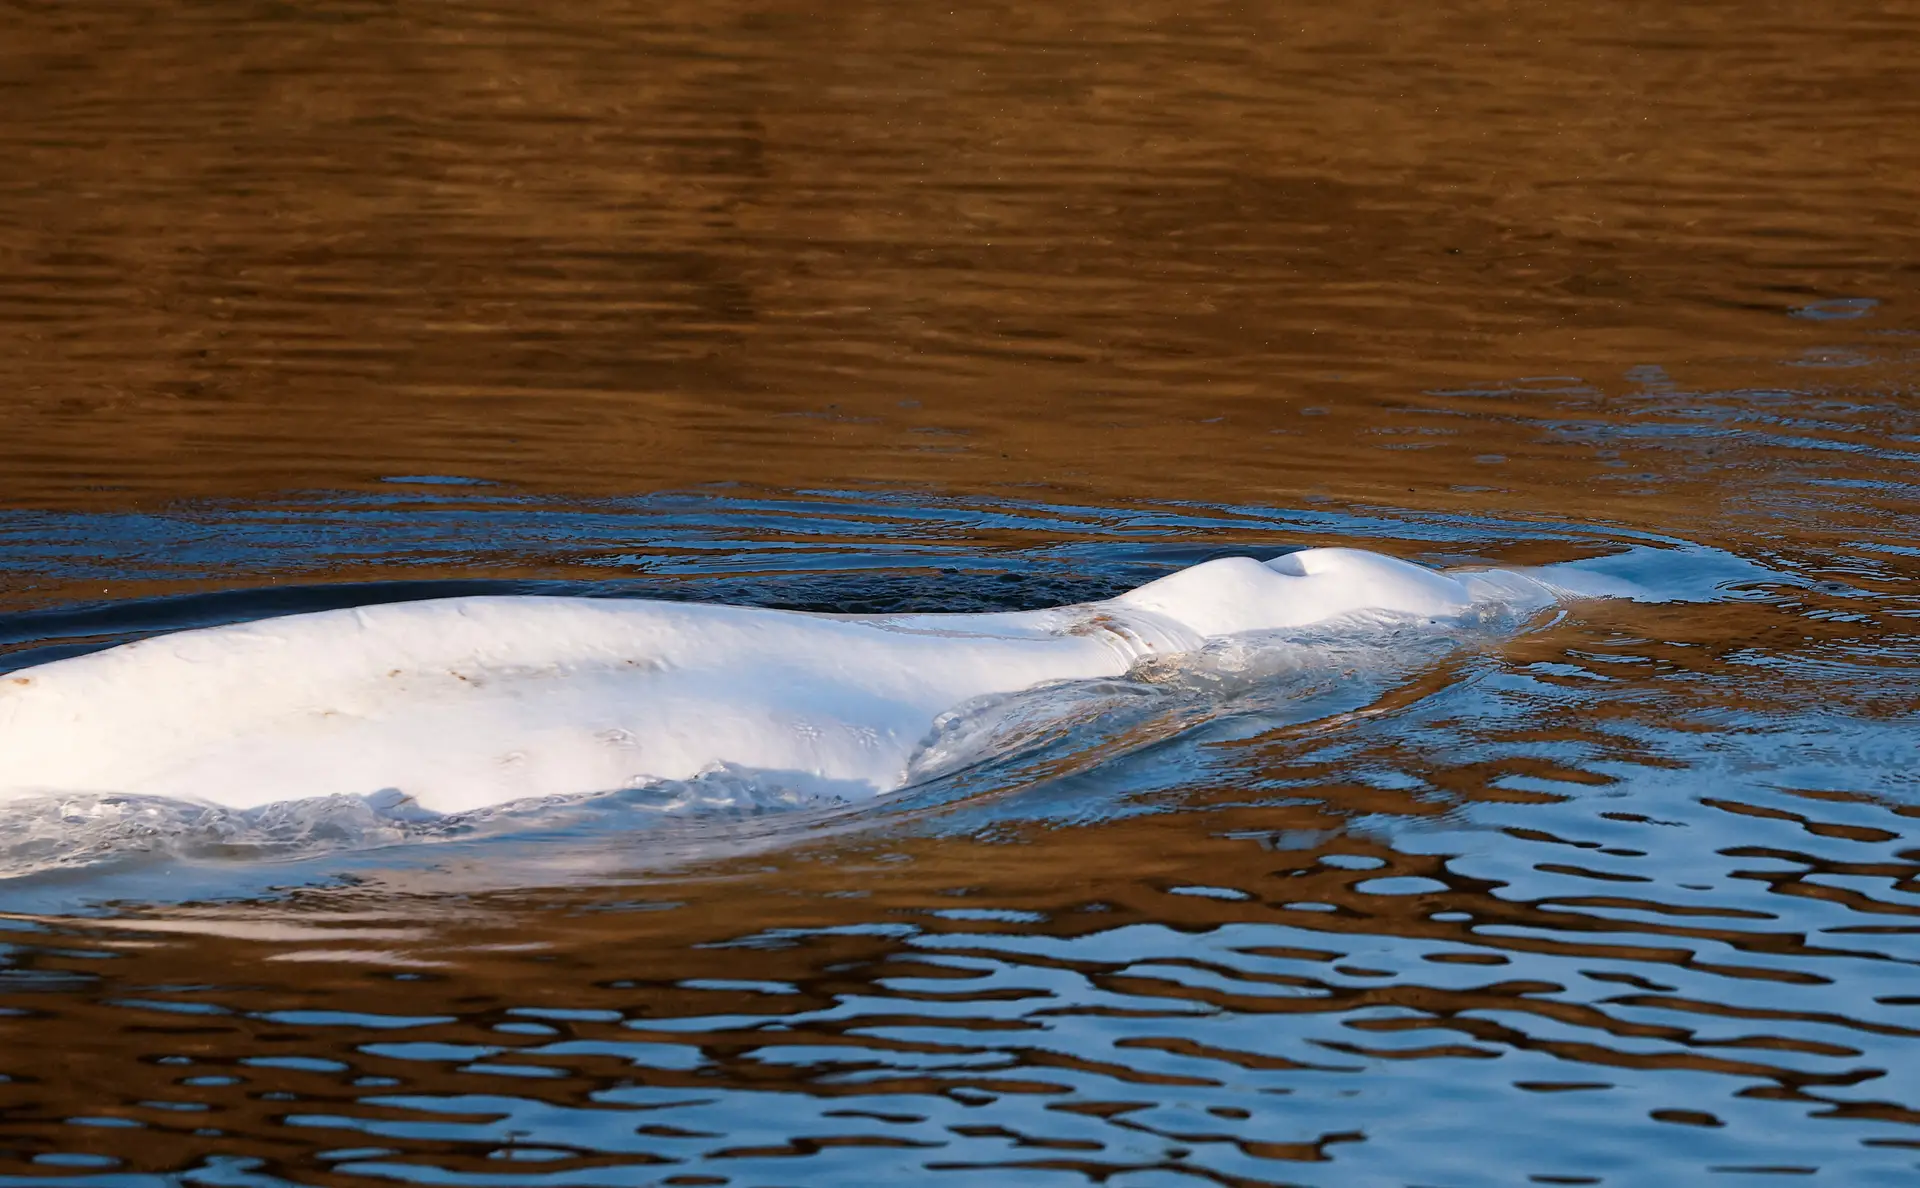 Morreu a baleia beluga que estava perdida no rio Sena